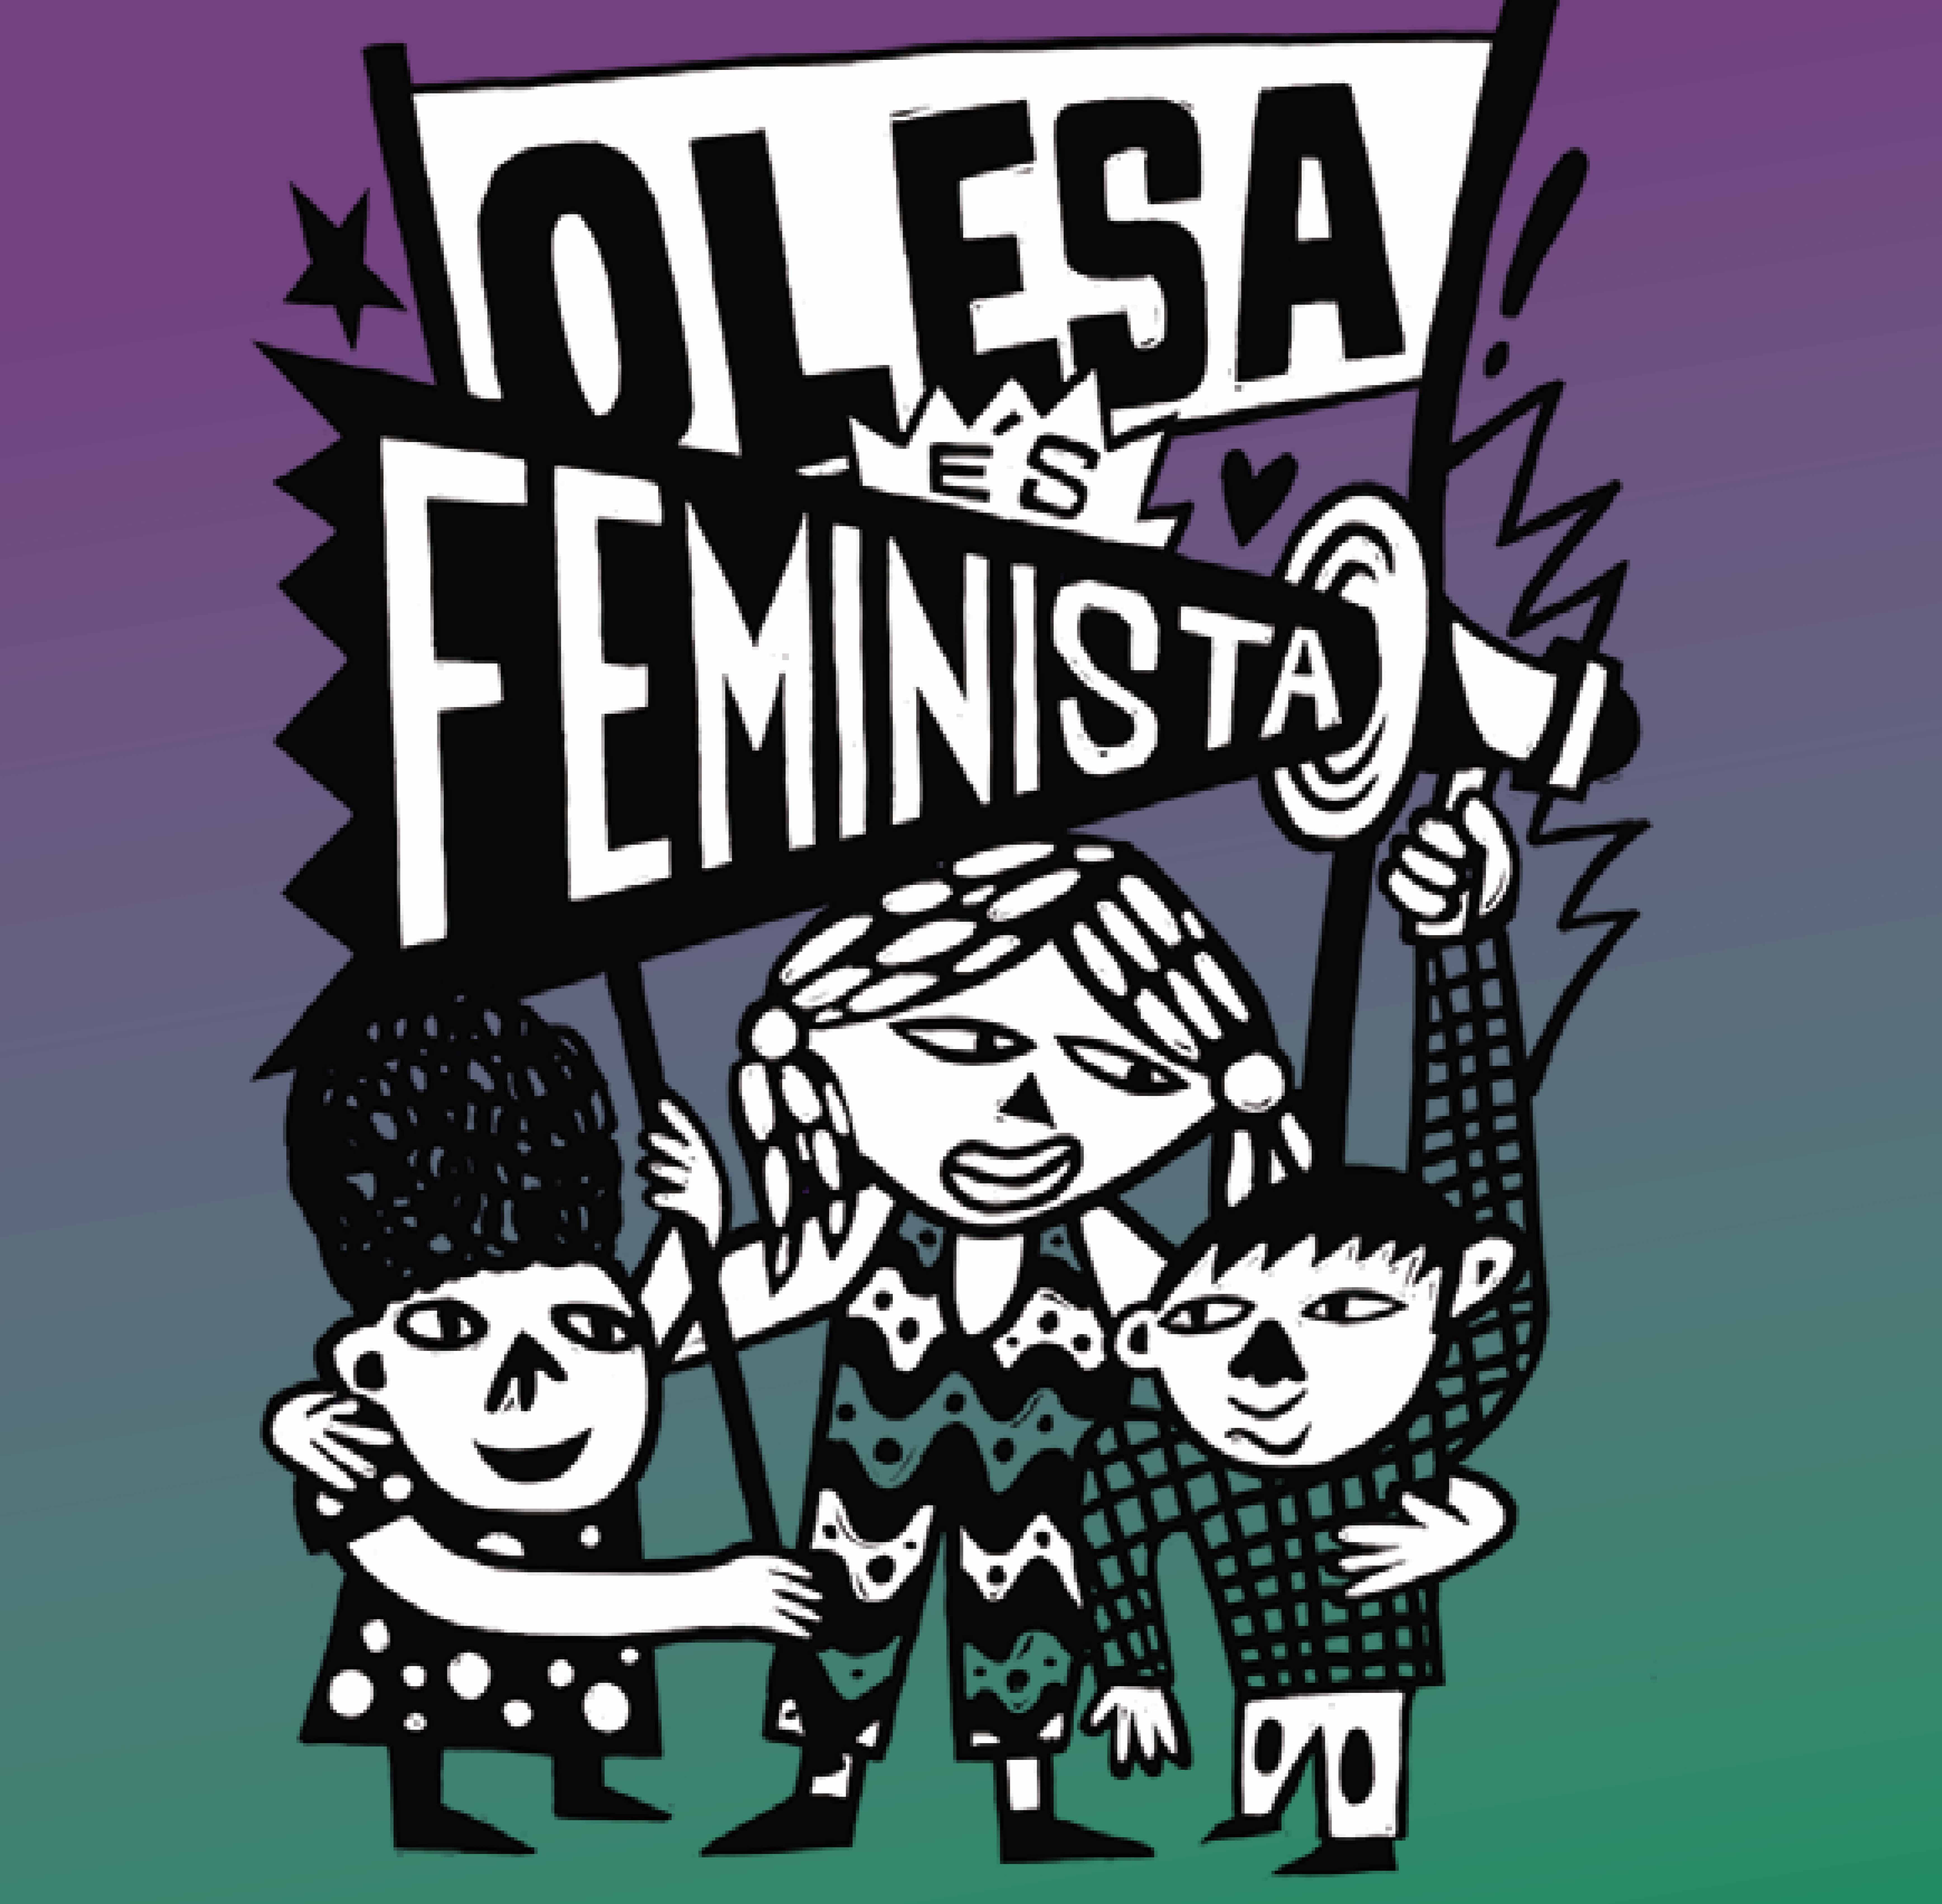 Olesa és feminista